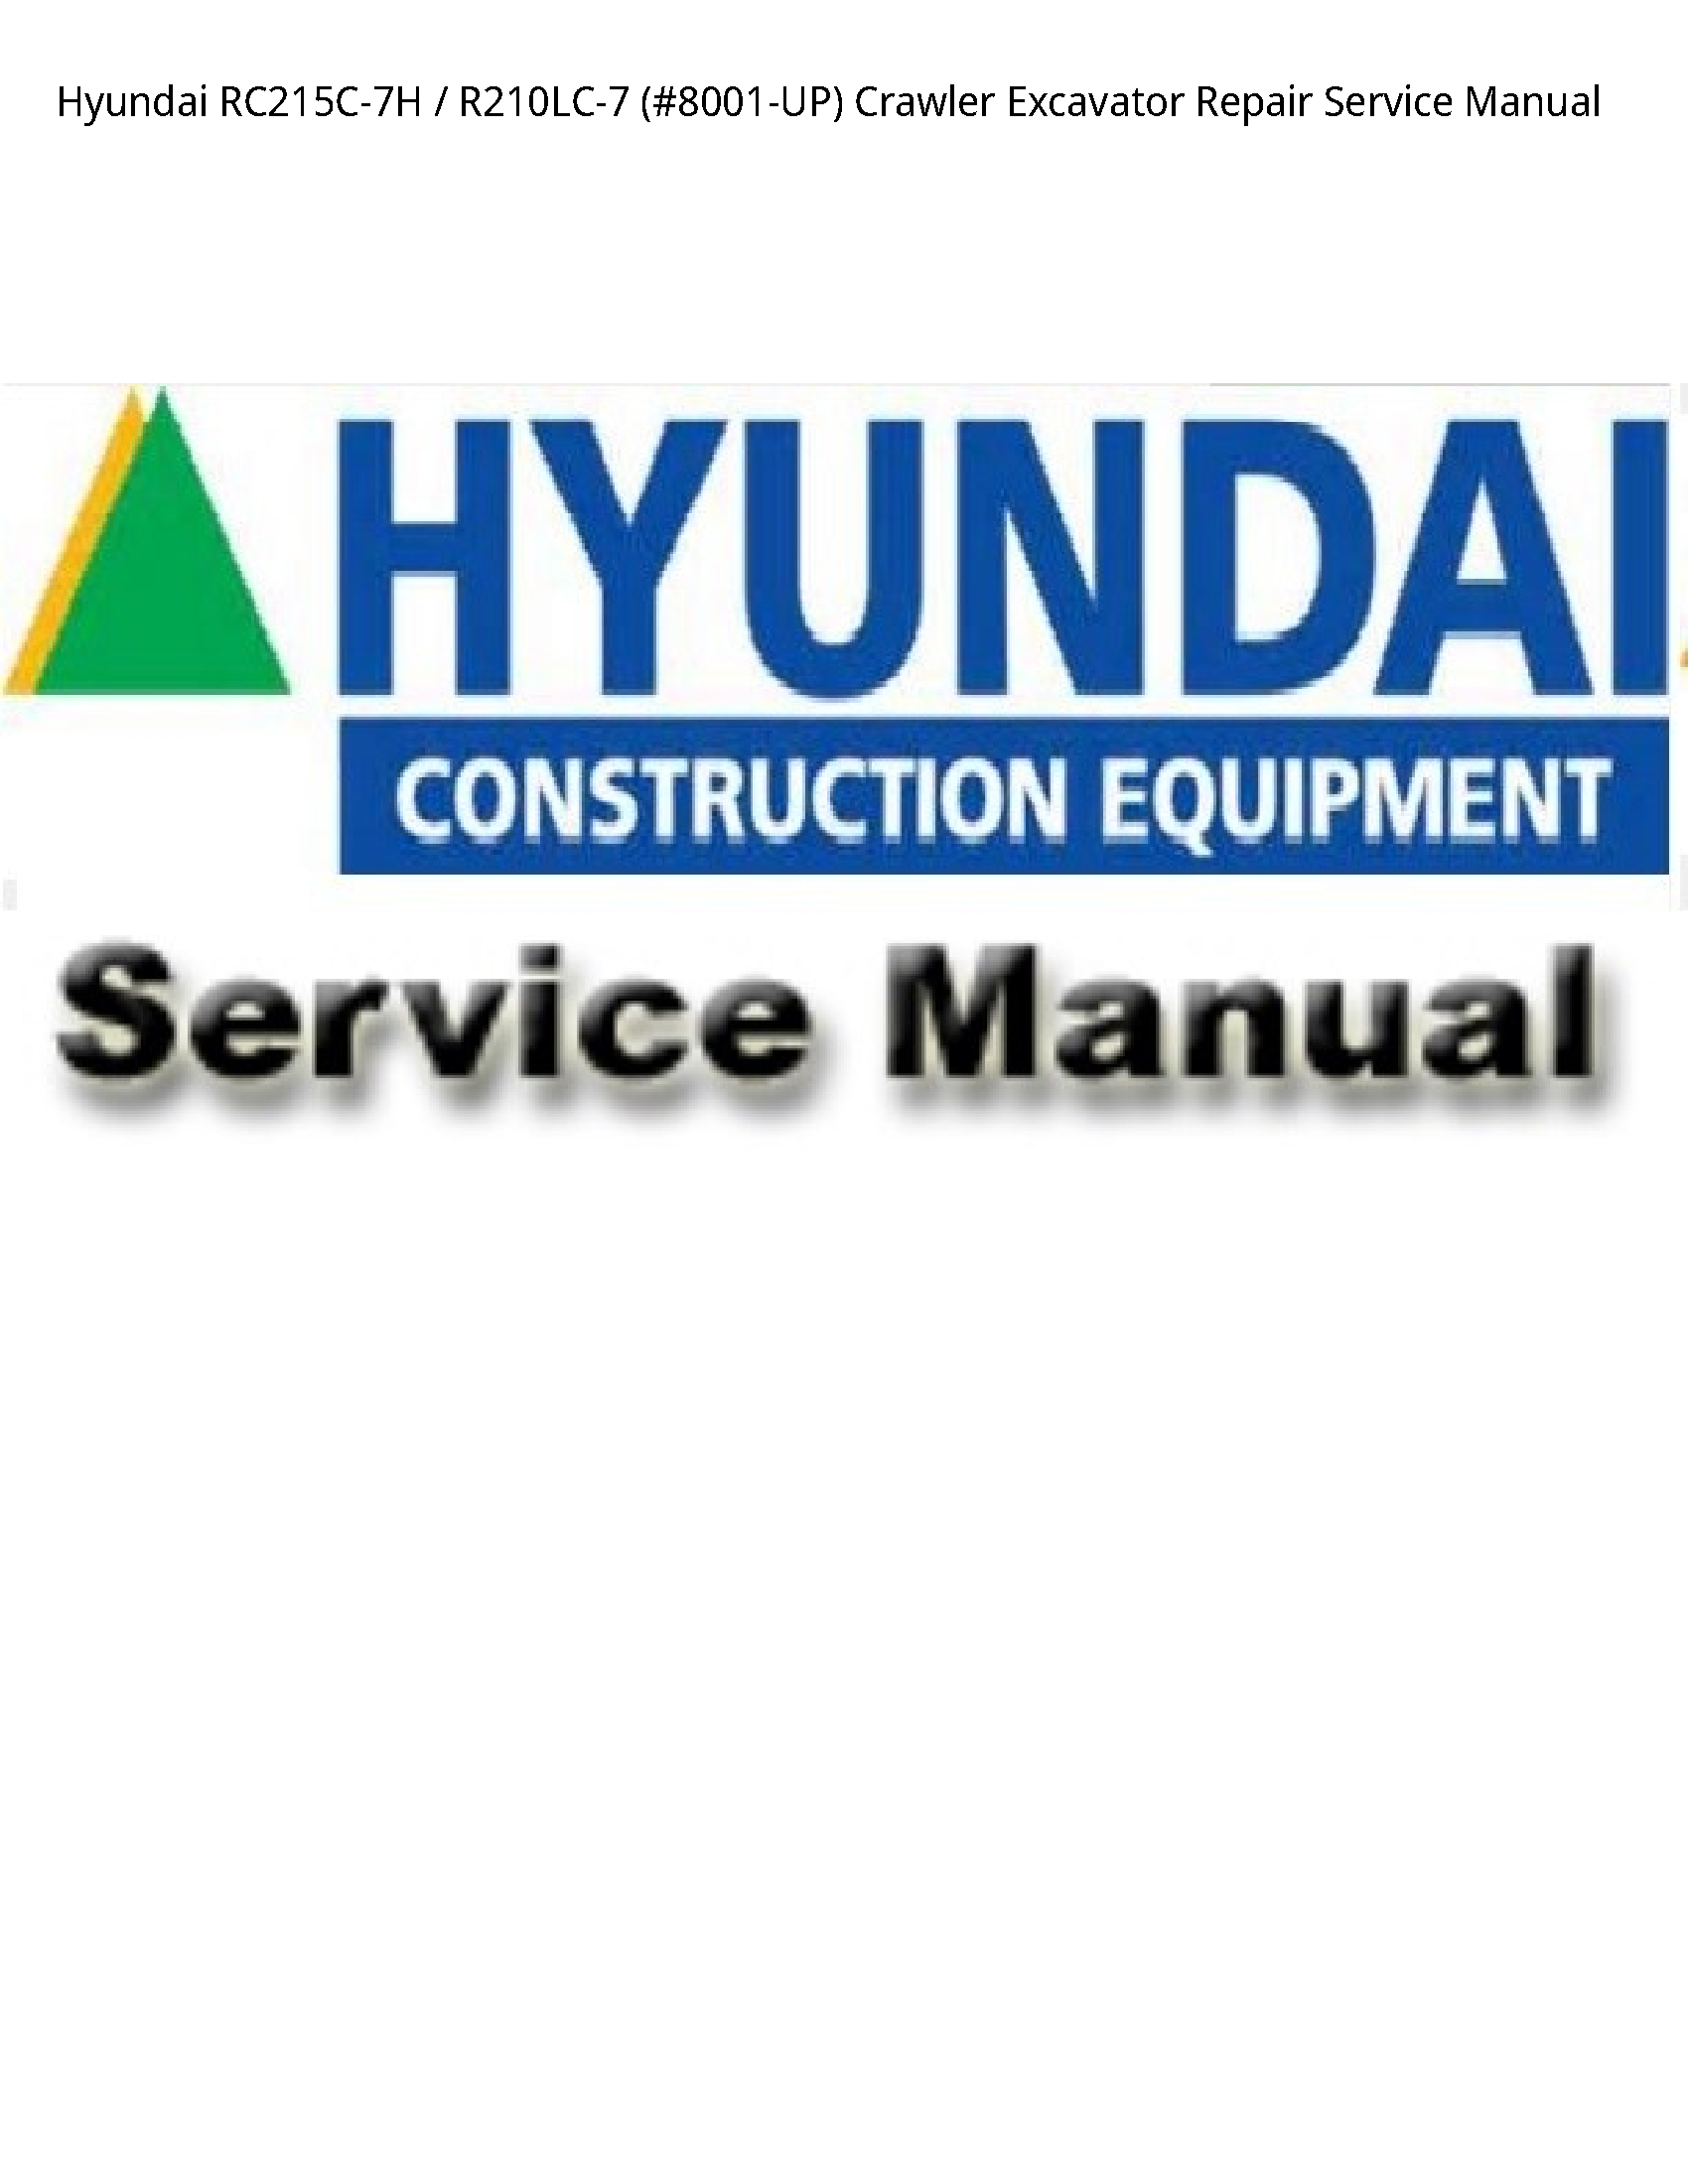 Hyundai RC215C-7H Crawler Excavator Repair Service manual